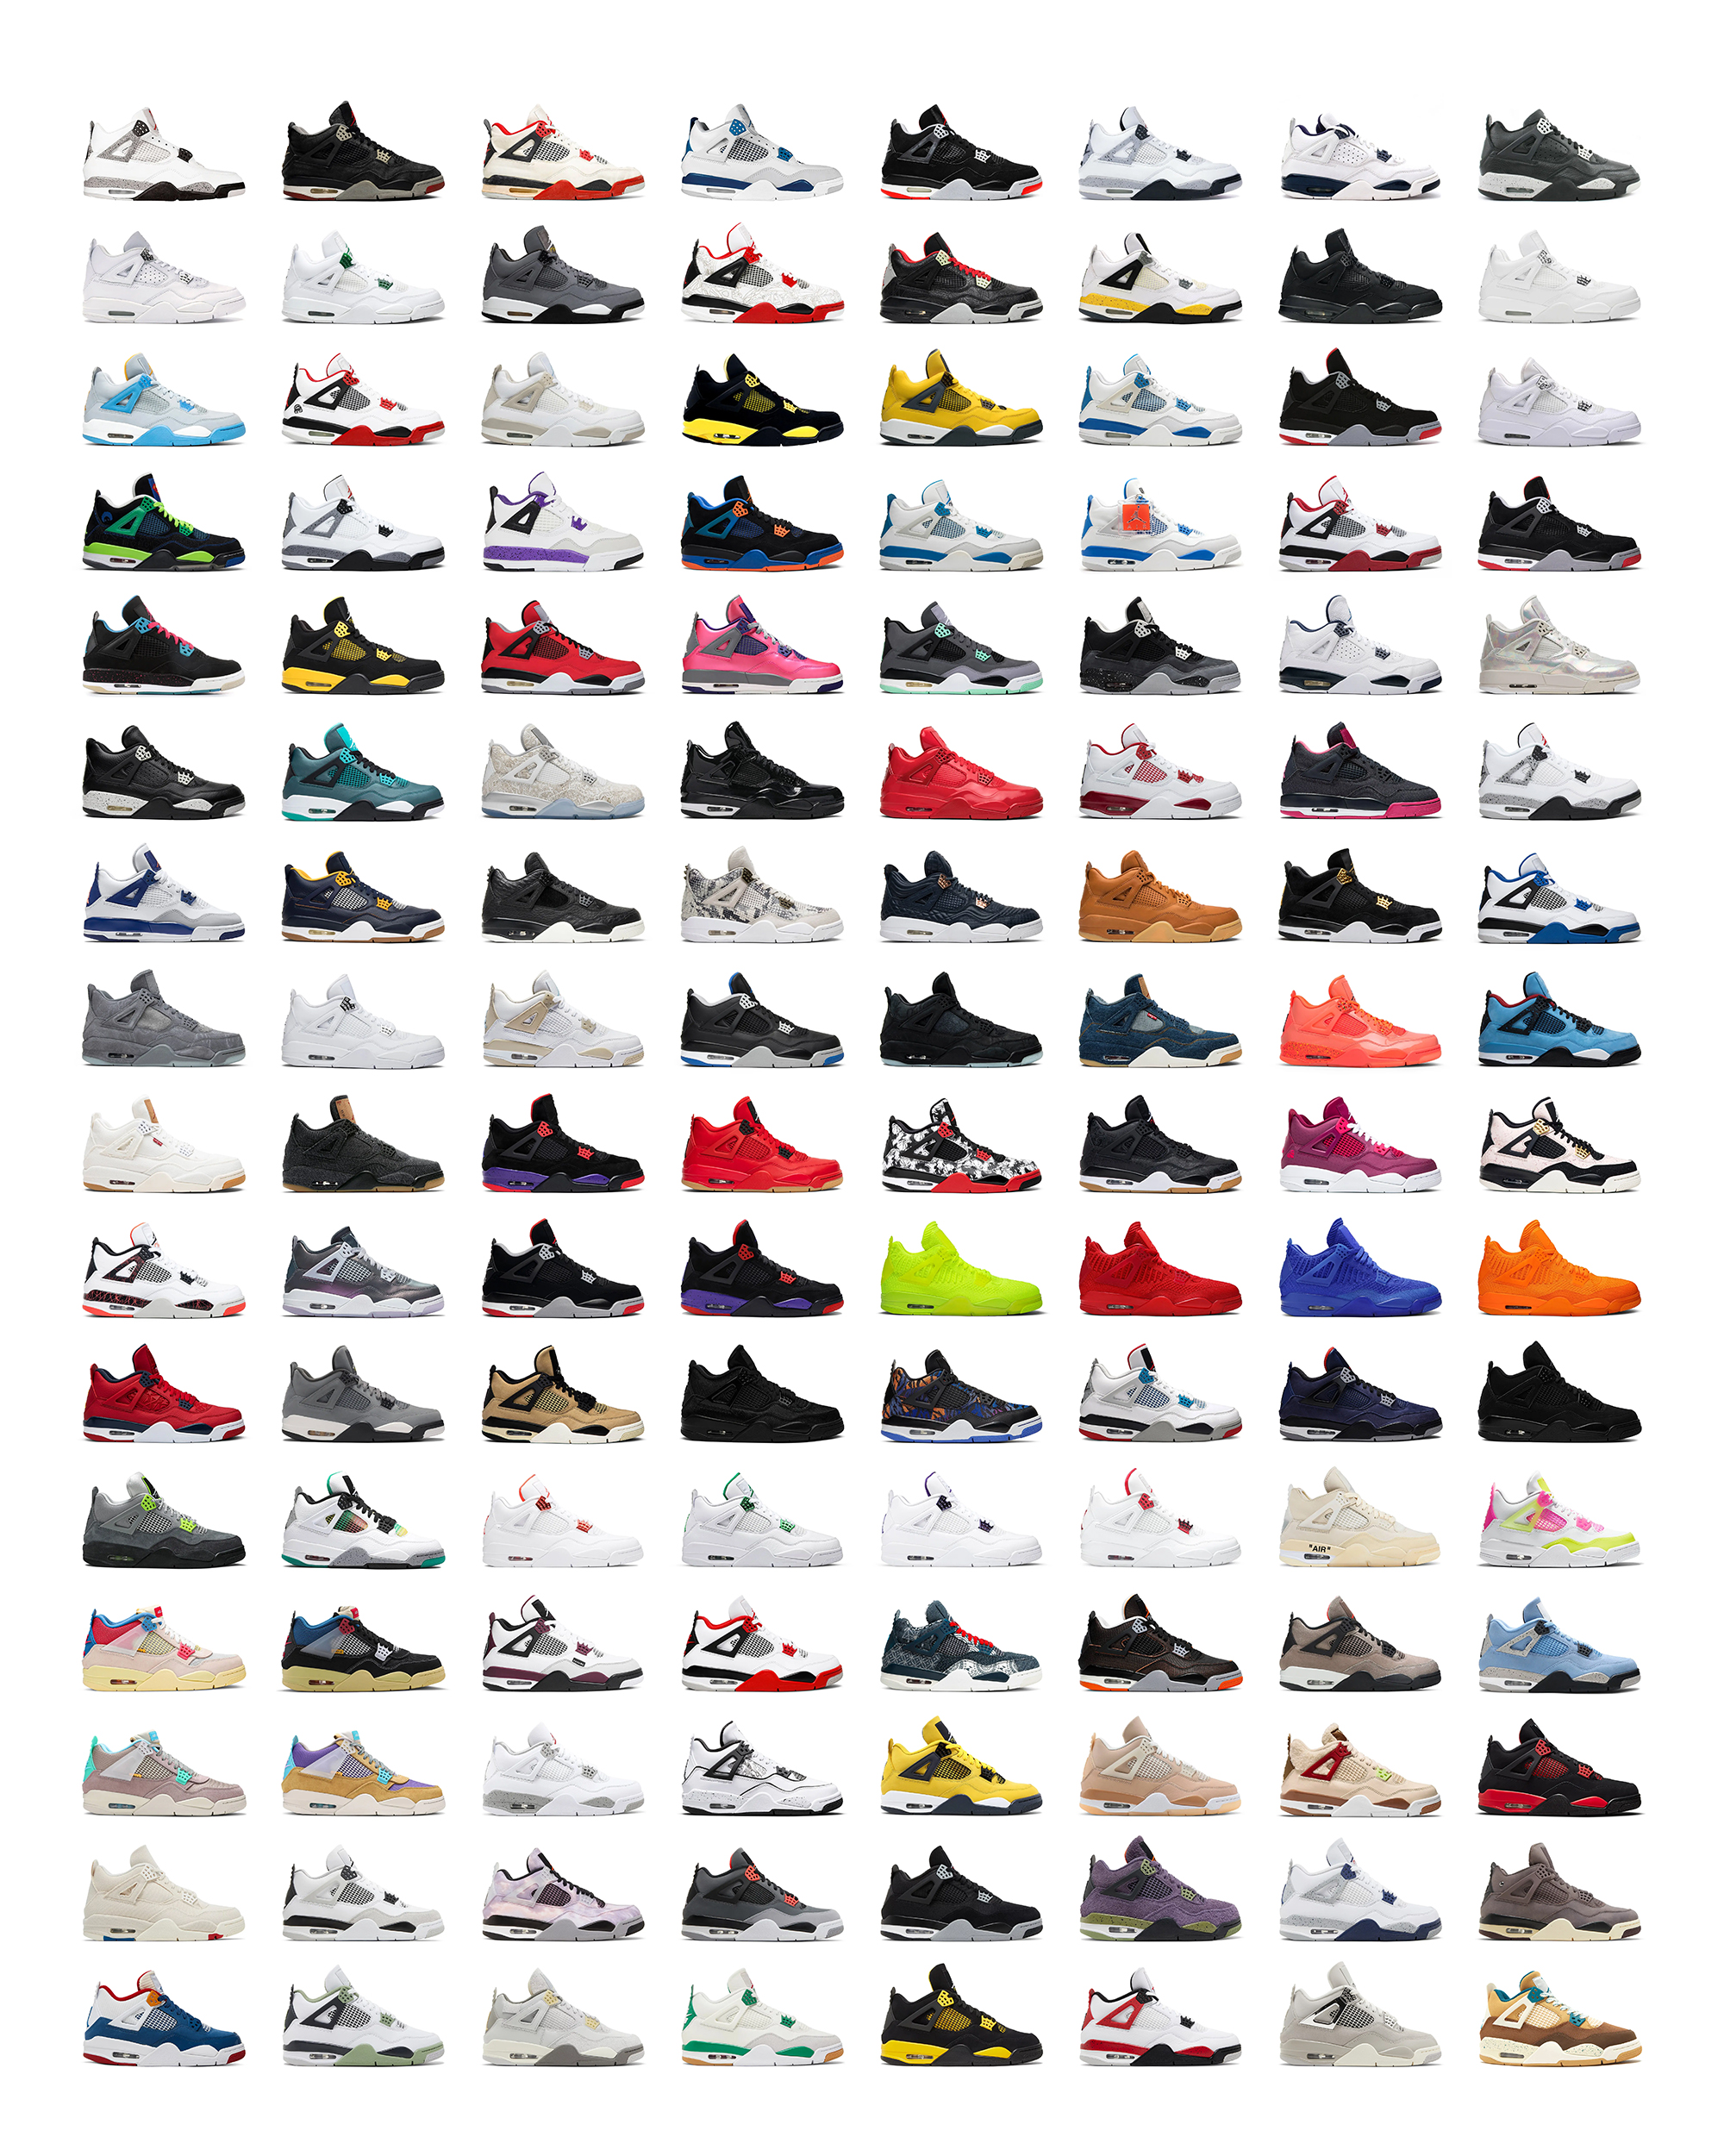 Every Air Jordan 11 Colorway Ever Released